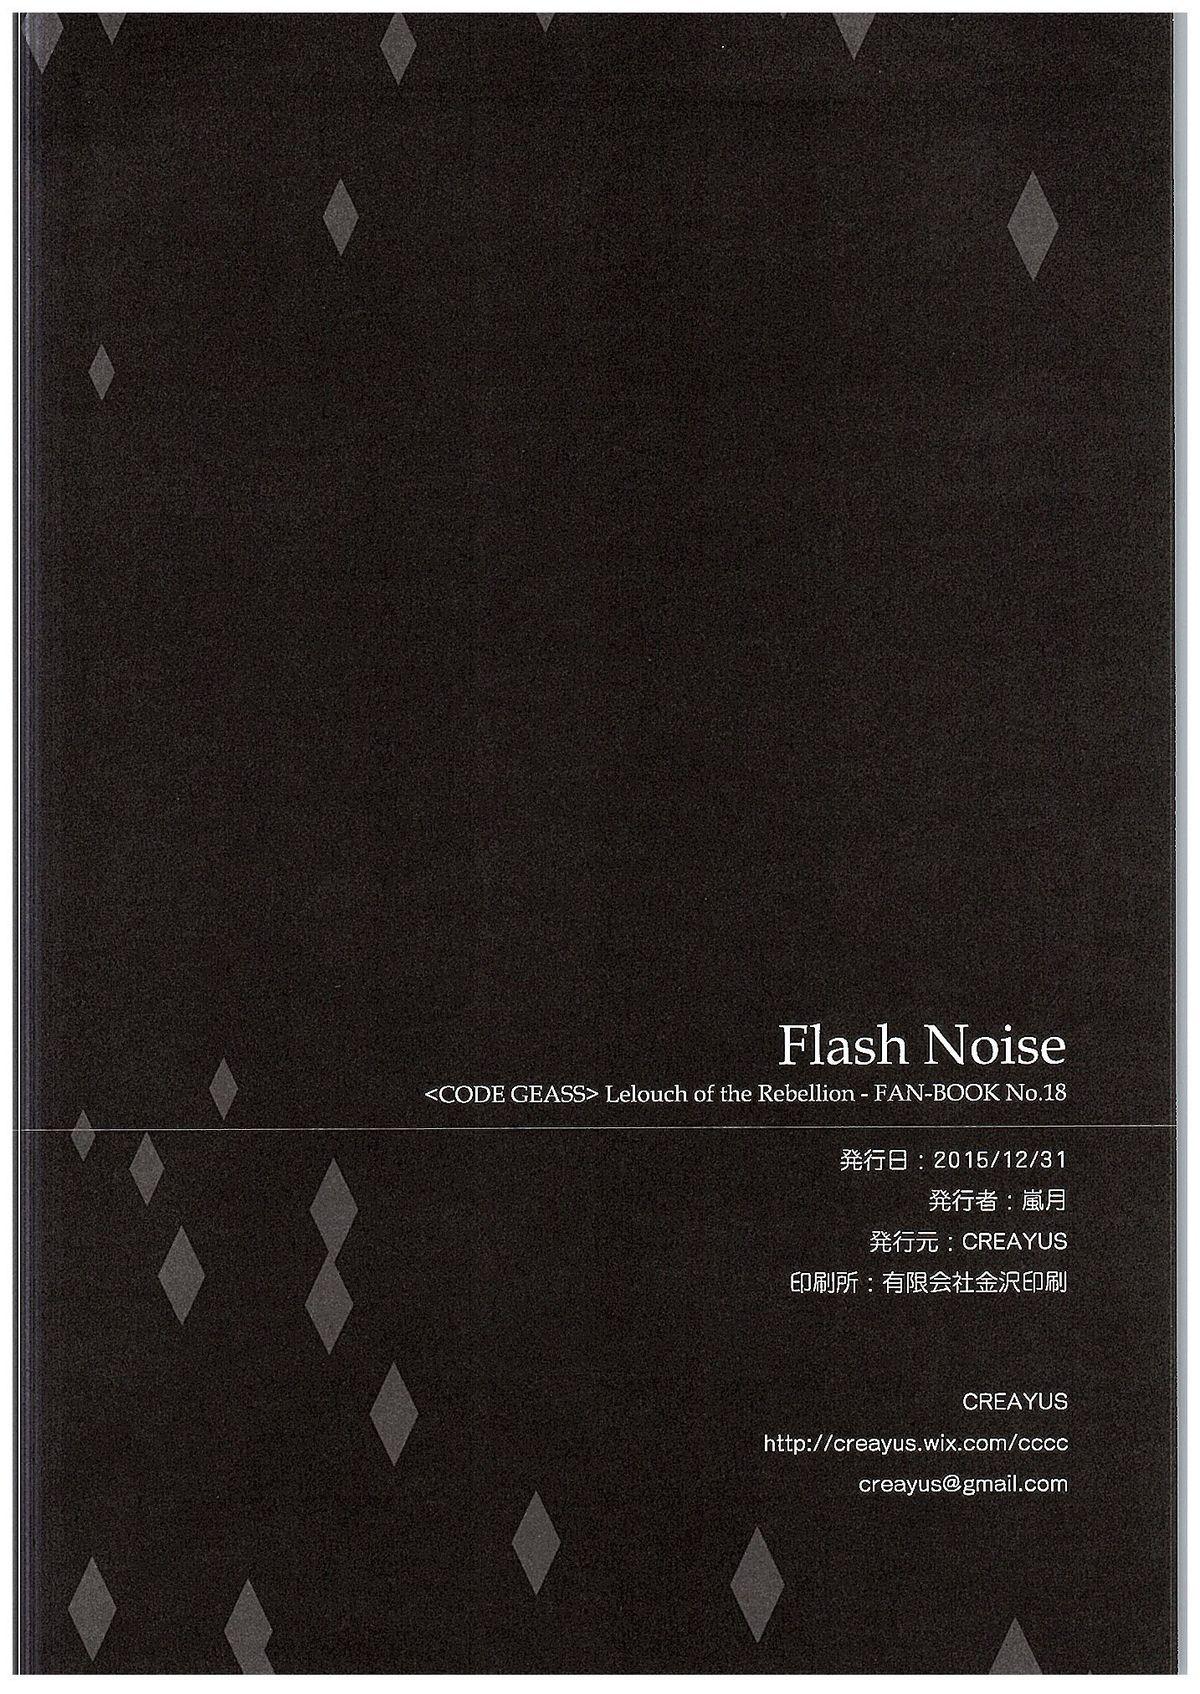 FLASH NOISE 26